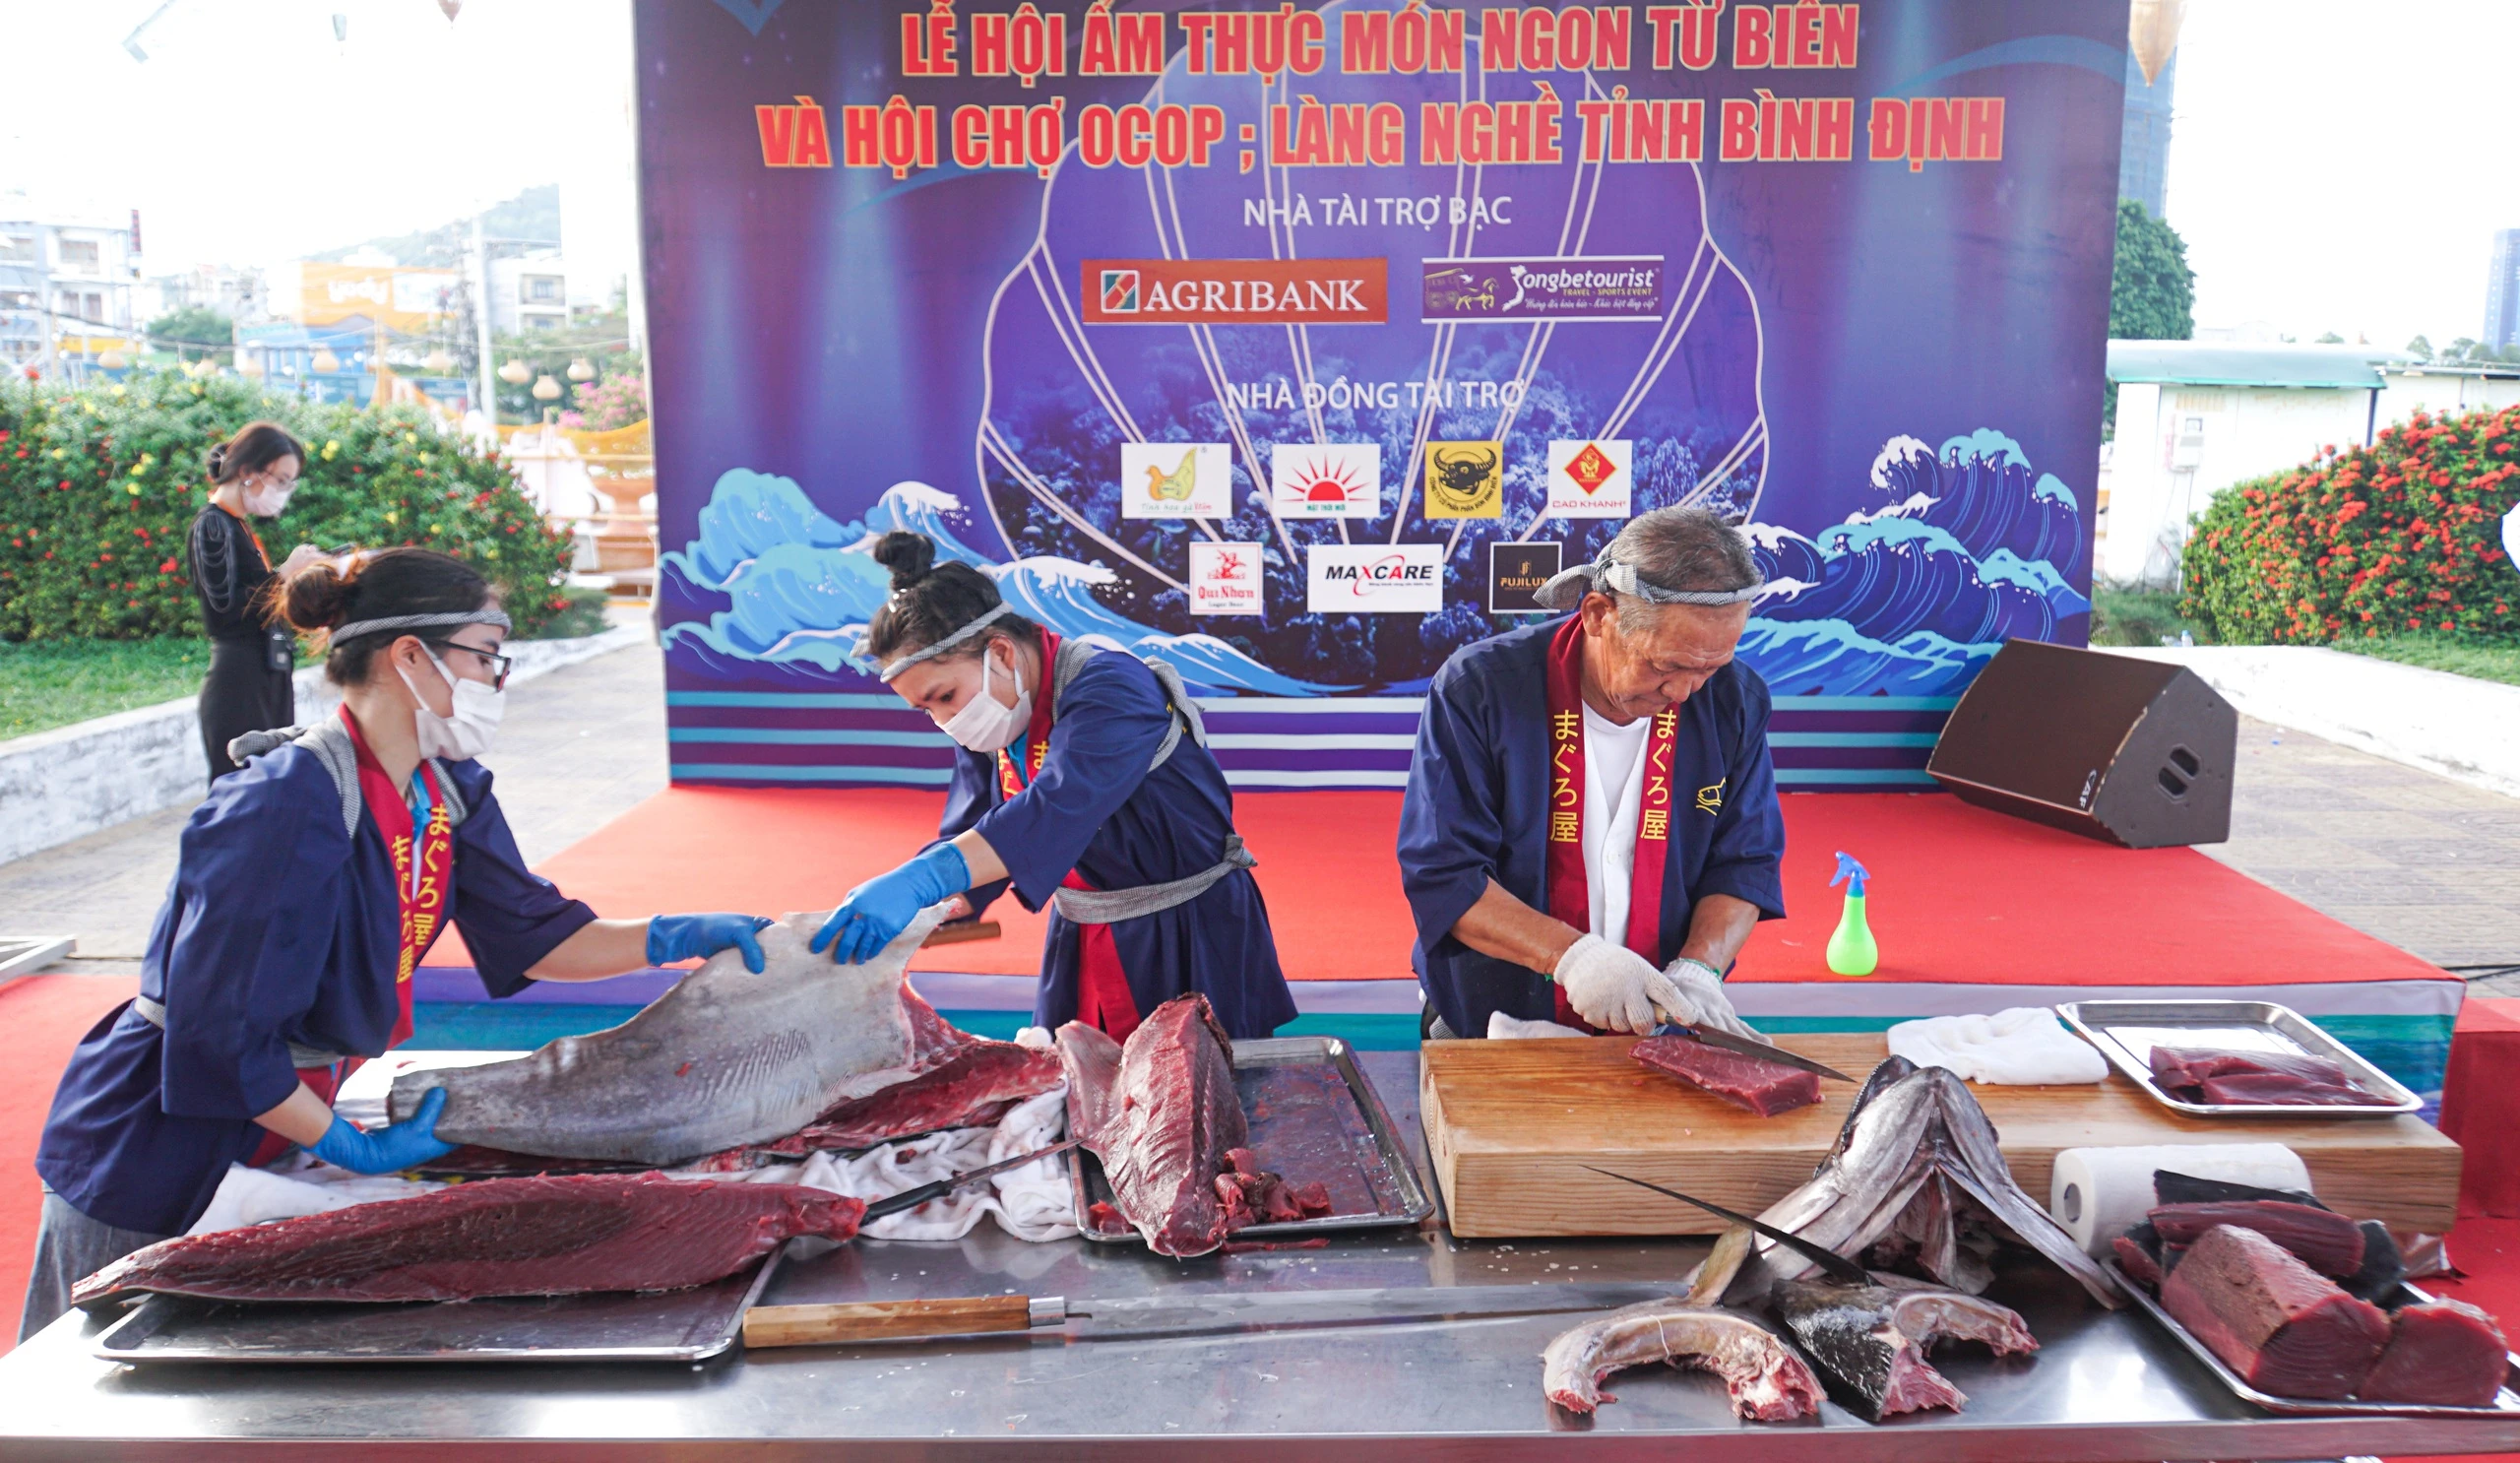 Mãn nhãn cảnh đầu bếp Nhật Bản trổ tài phi lê cá ngừ đại dương 50kg